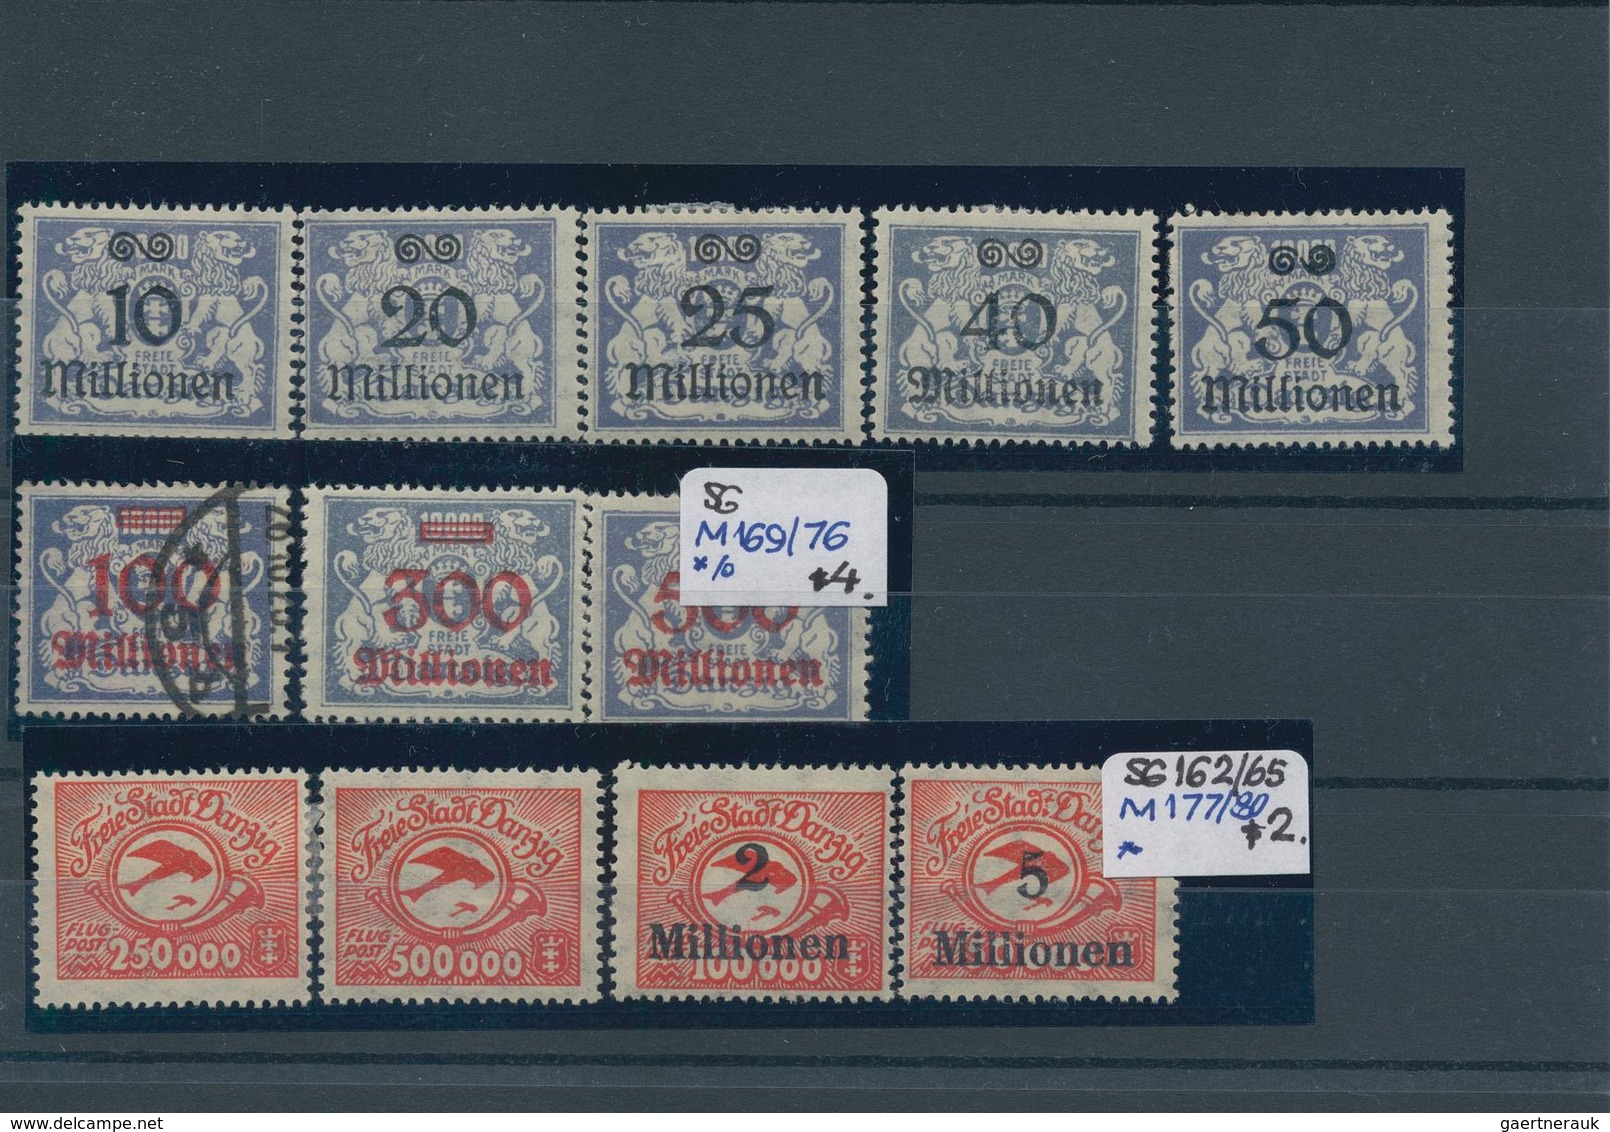 Deutschland: 1916/1955 (ca.), sauber sortierter Bestand auf Steckkarten im Ringalbum, dabei guter Te